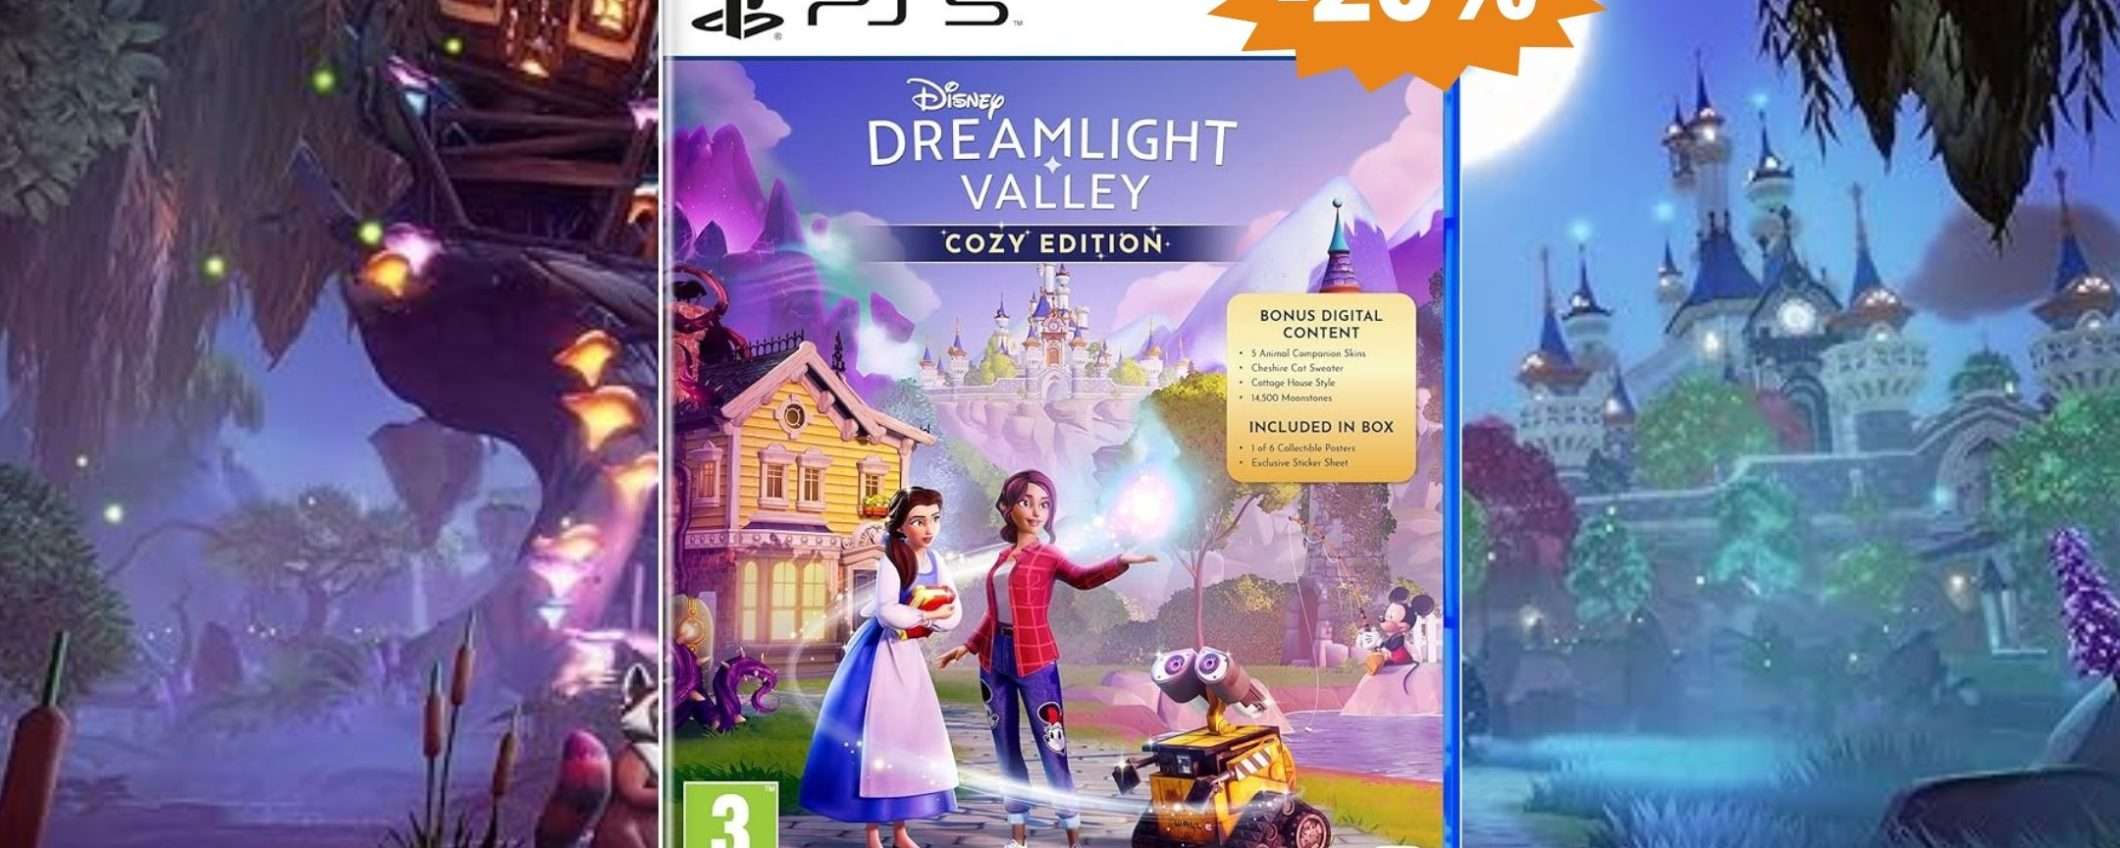 Disney Dreamlight Valley PS5: un'occasione MAGICA su Amazon